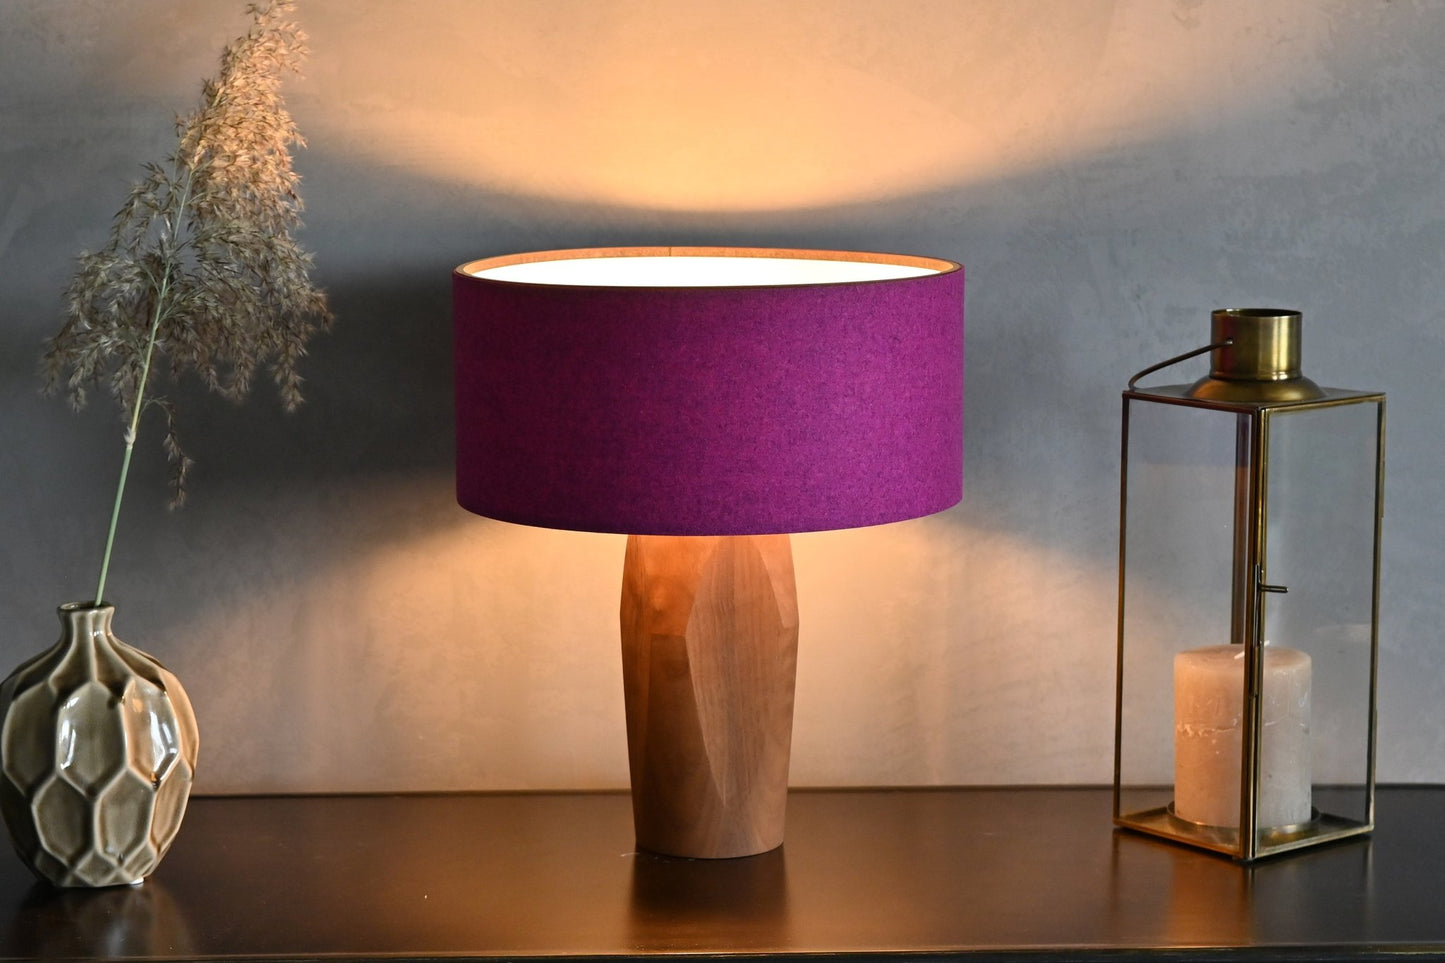 Pura Nachttischlampe Pink Nussbaum - Tischleuchte/Nachttischlampe - Leuchtnatur